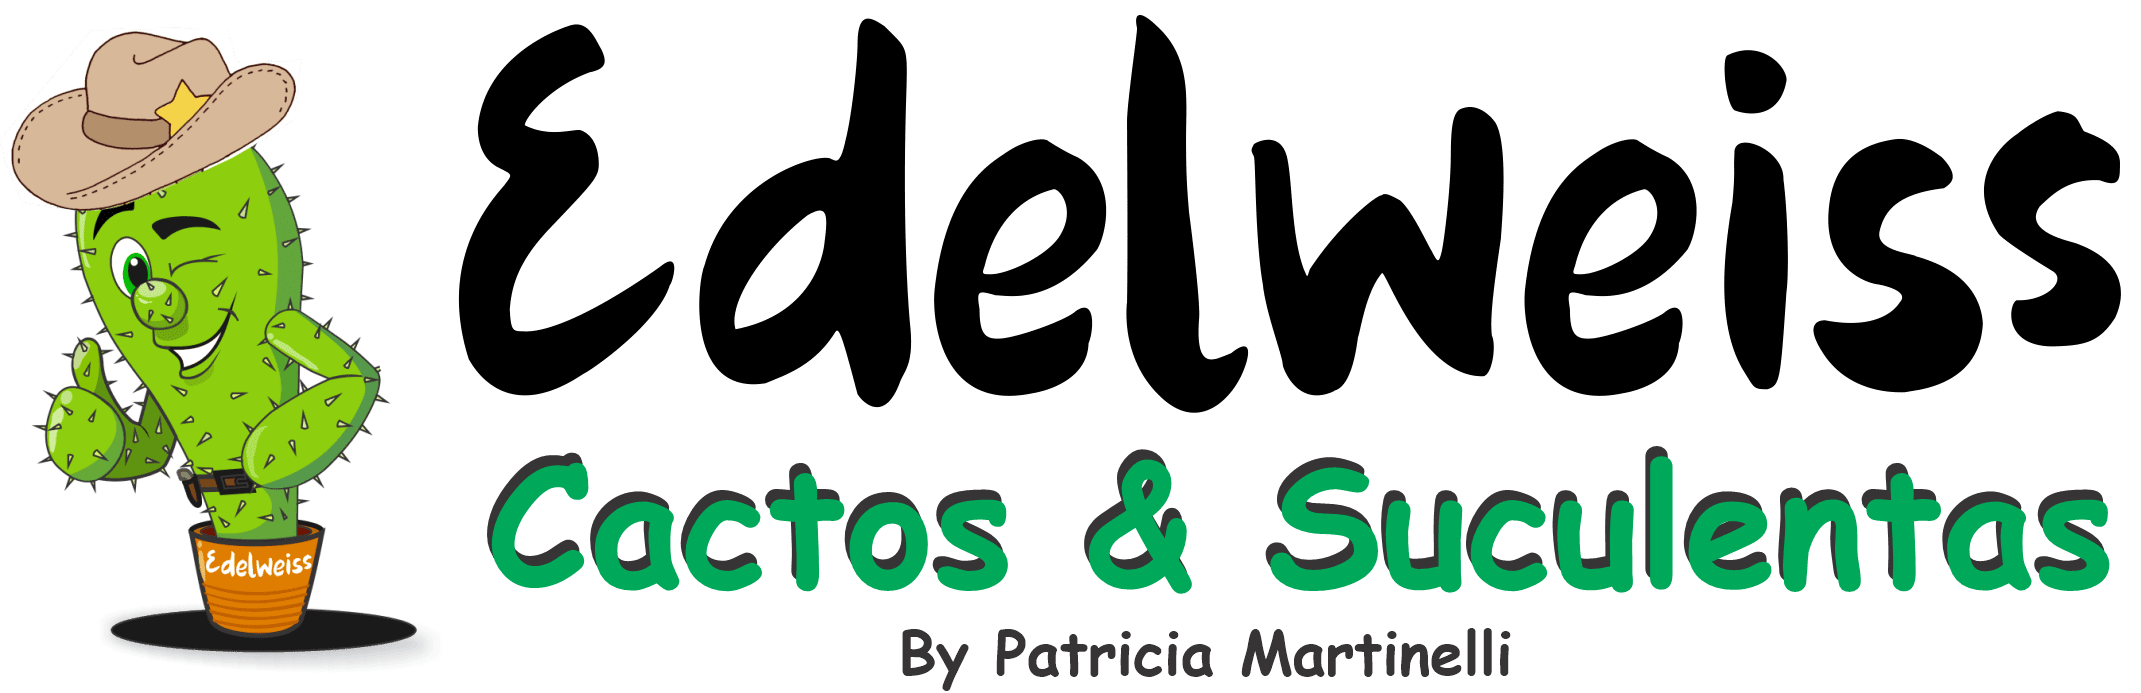 Edelweiss Suculentas